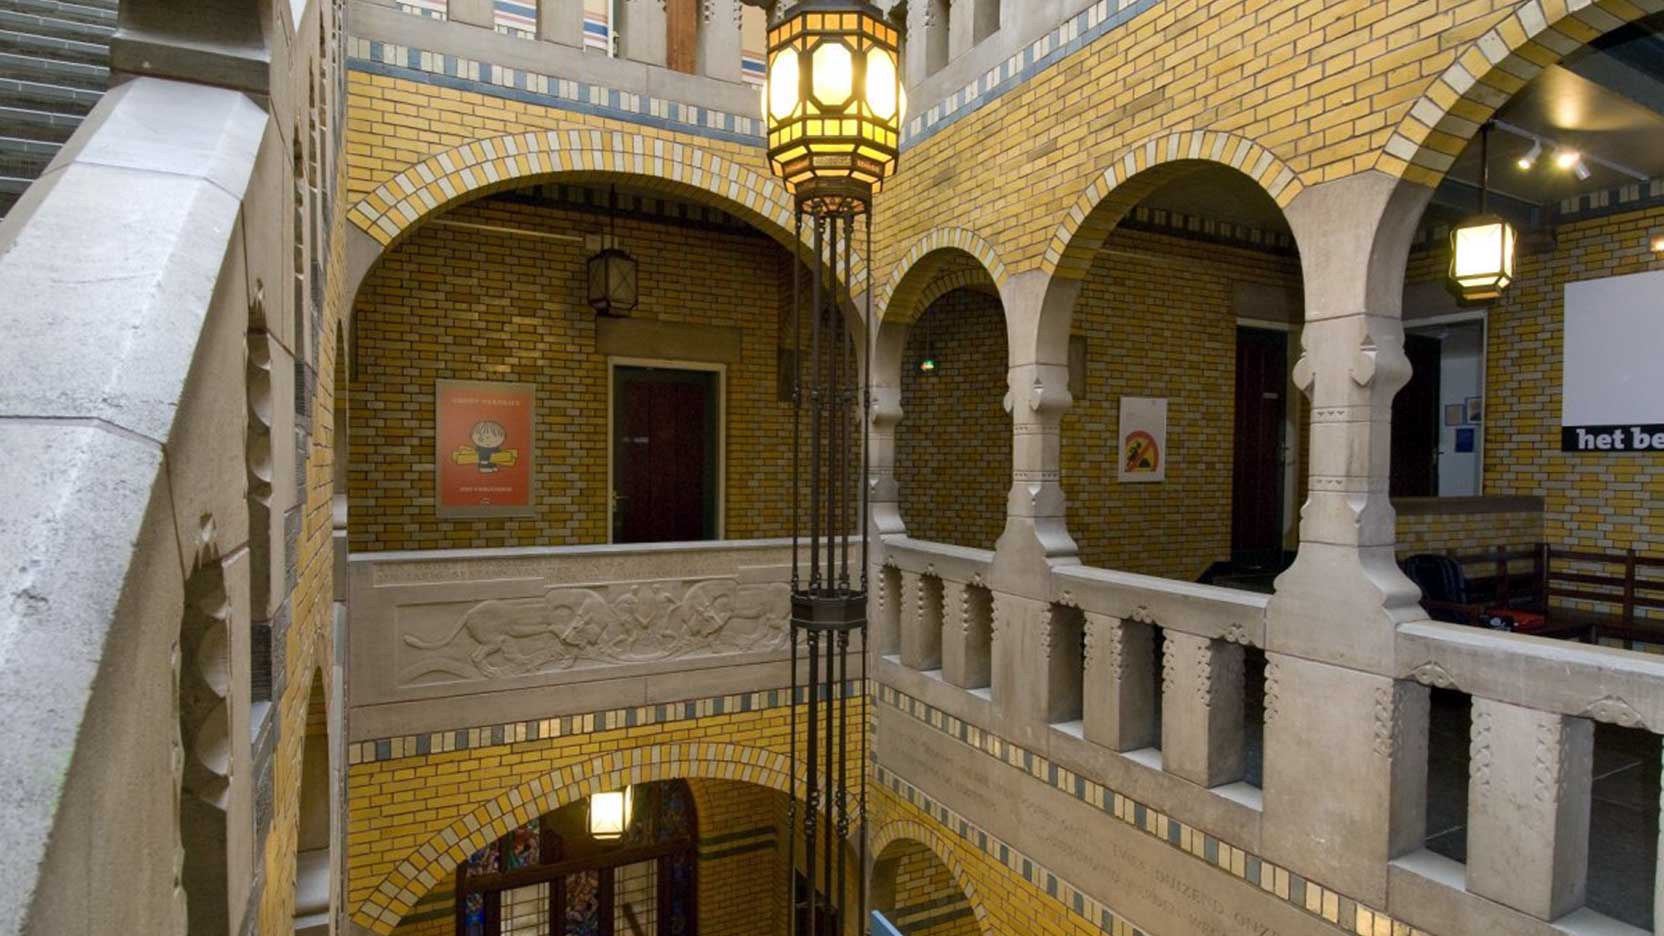 Amsterdam, Burcht van Berlage, internal view hallway second floor